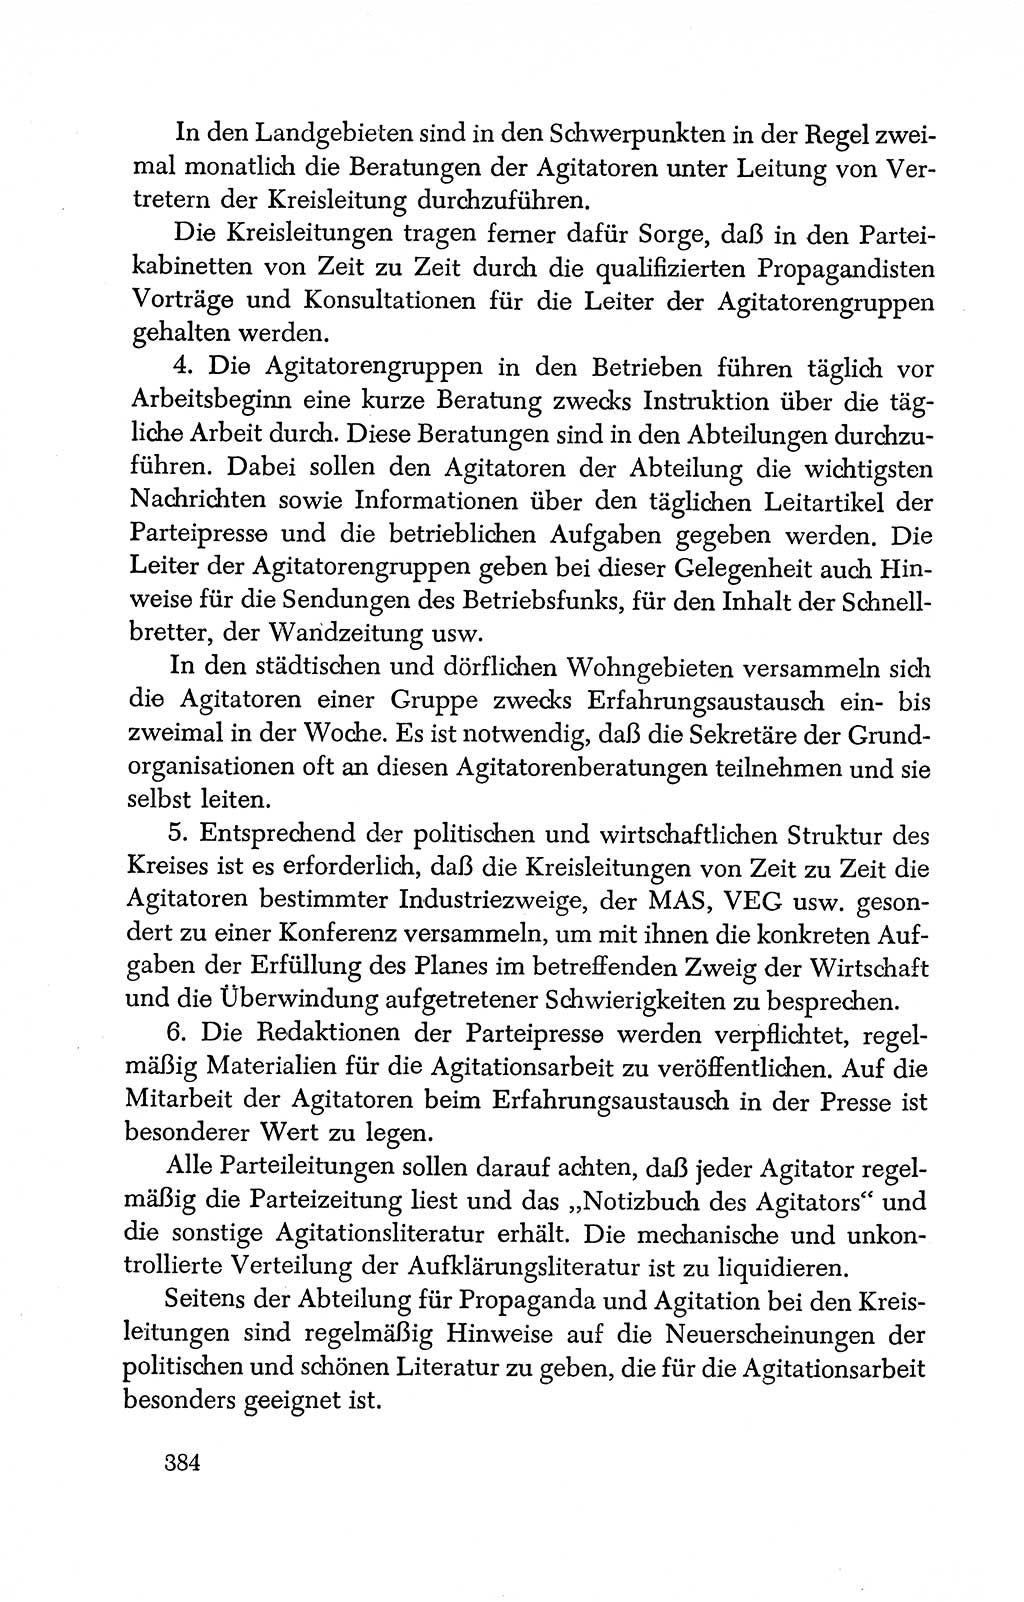 Dokumente der Sozialistischen Einheitspartei Deutschlands (SED) [Deutsche Demokratische Republik (DDR)] 1950-1952, Seite 384 (Dok. SED DDR 1950-1952, S. 384)